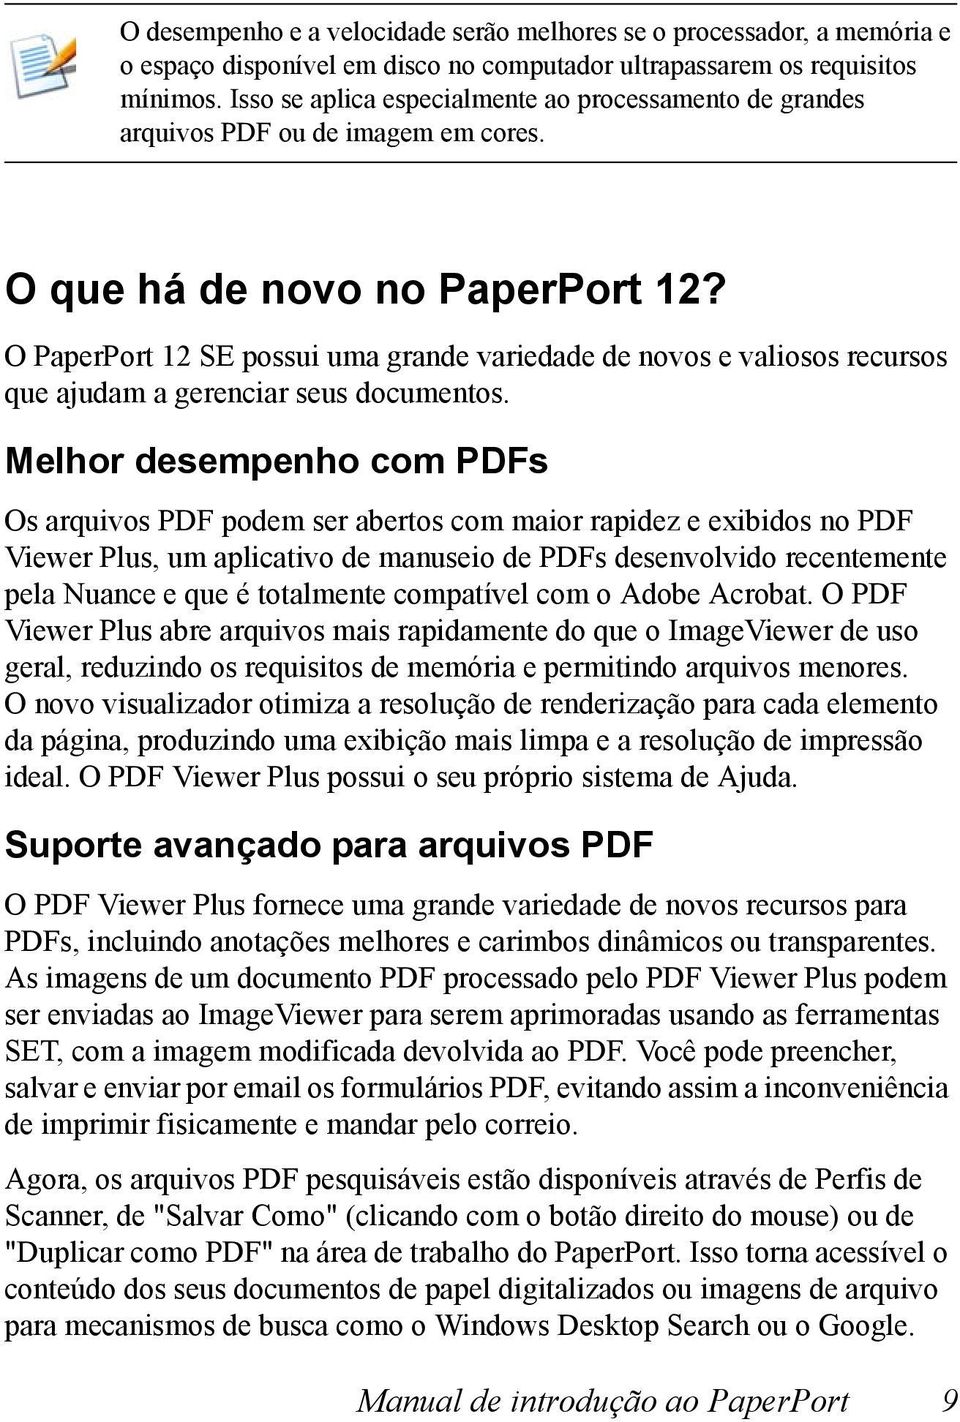 O PaperPort 12 SE possui uma grande variedade de novos e valiosos recursos que ajudam a gerenciar seus documentos.